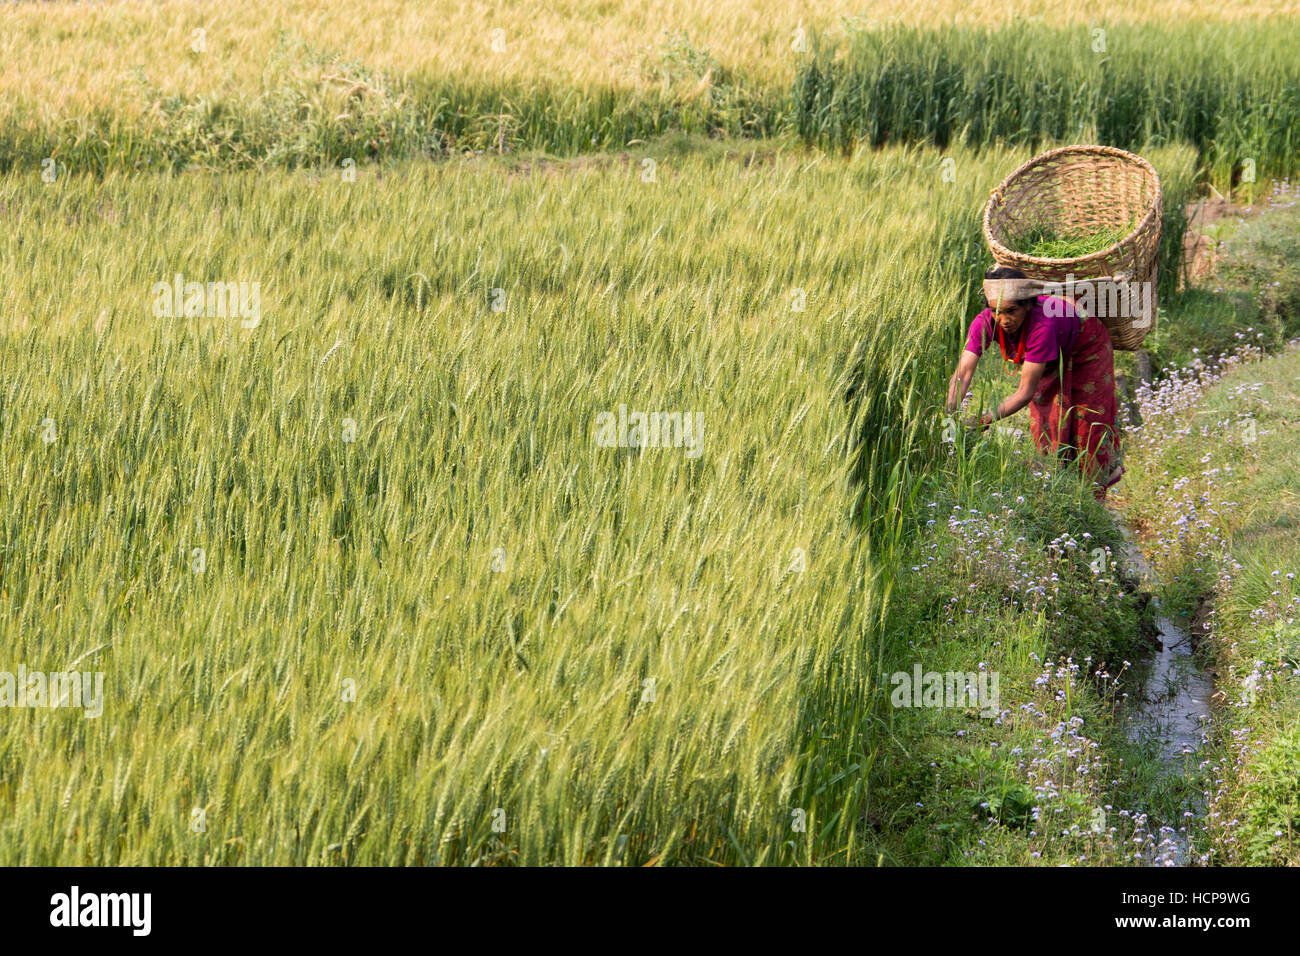 Frau Grass in einem Reisfeld Kommissionierung ihr Tierfutter in Sindupalchuk Bezirk, Nepal Stockfoto